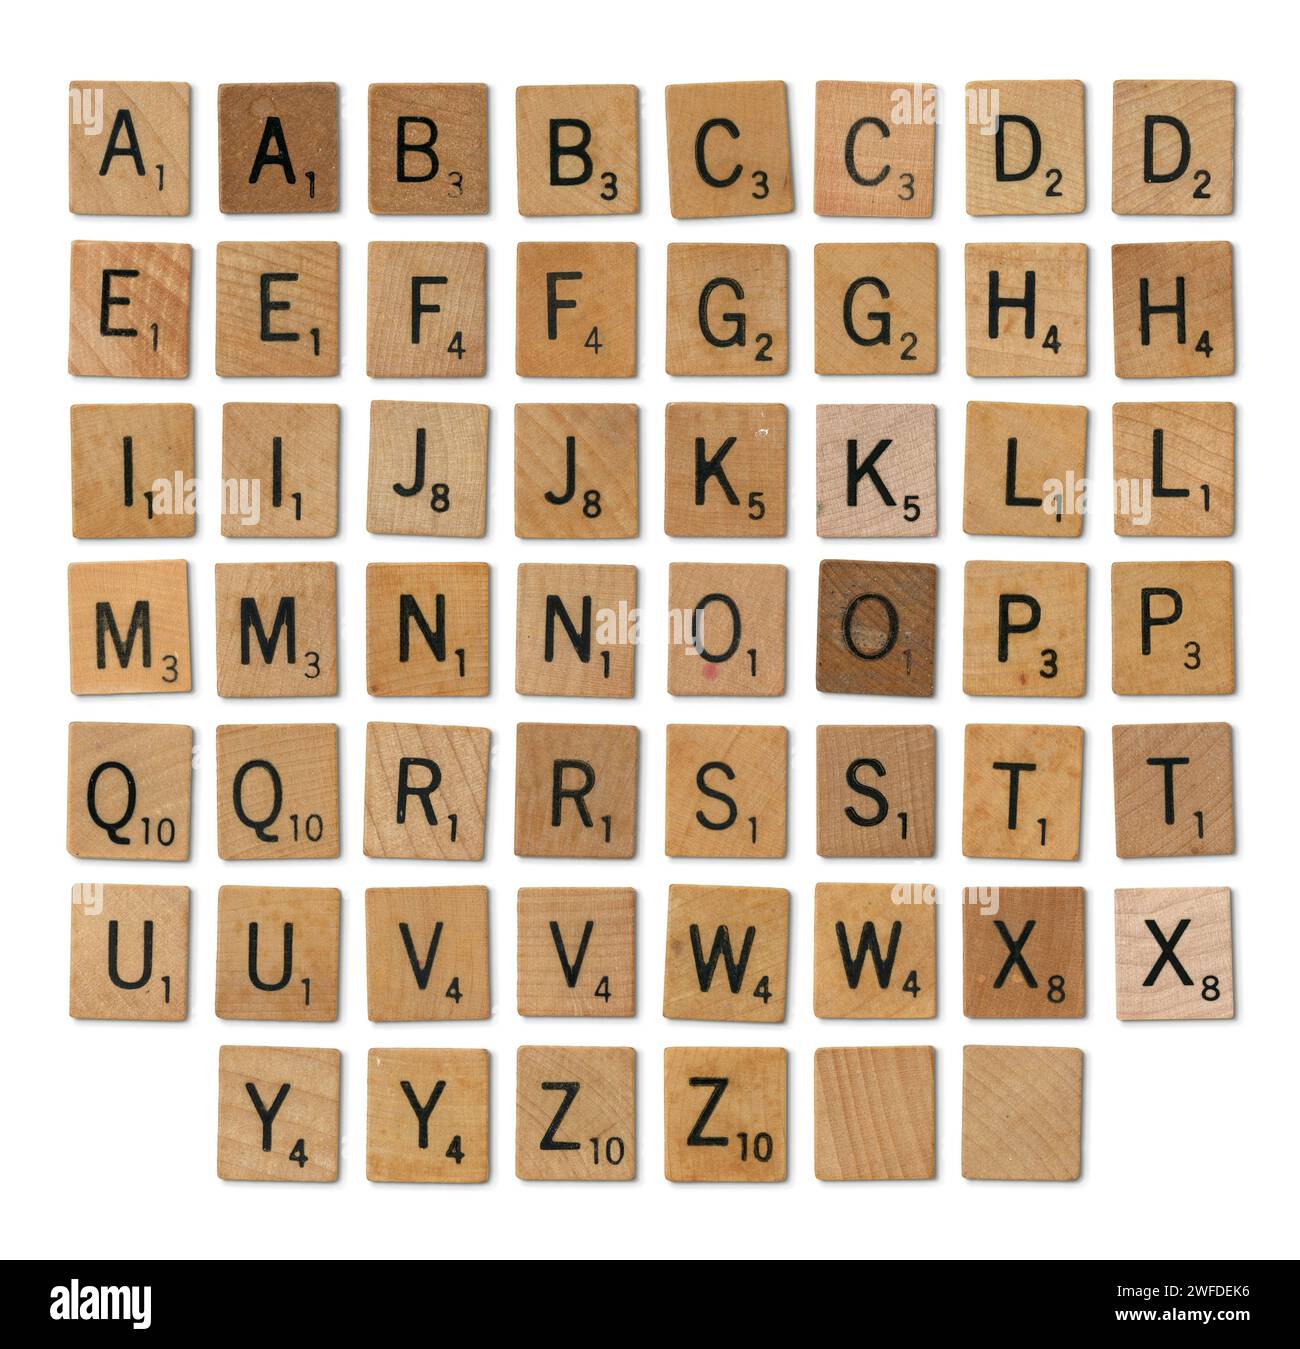 Conjunto de piezas de juego de Scrabble mixto - alfabeto completo aislado Foto de stock